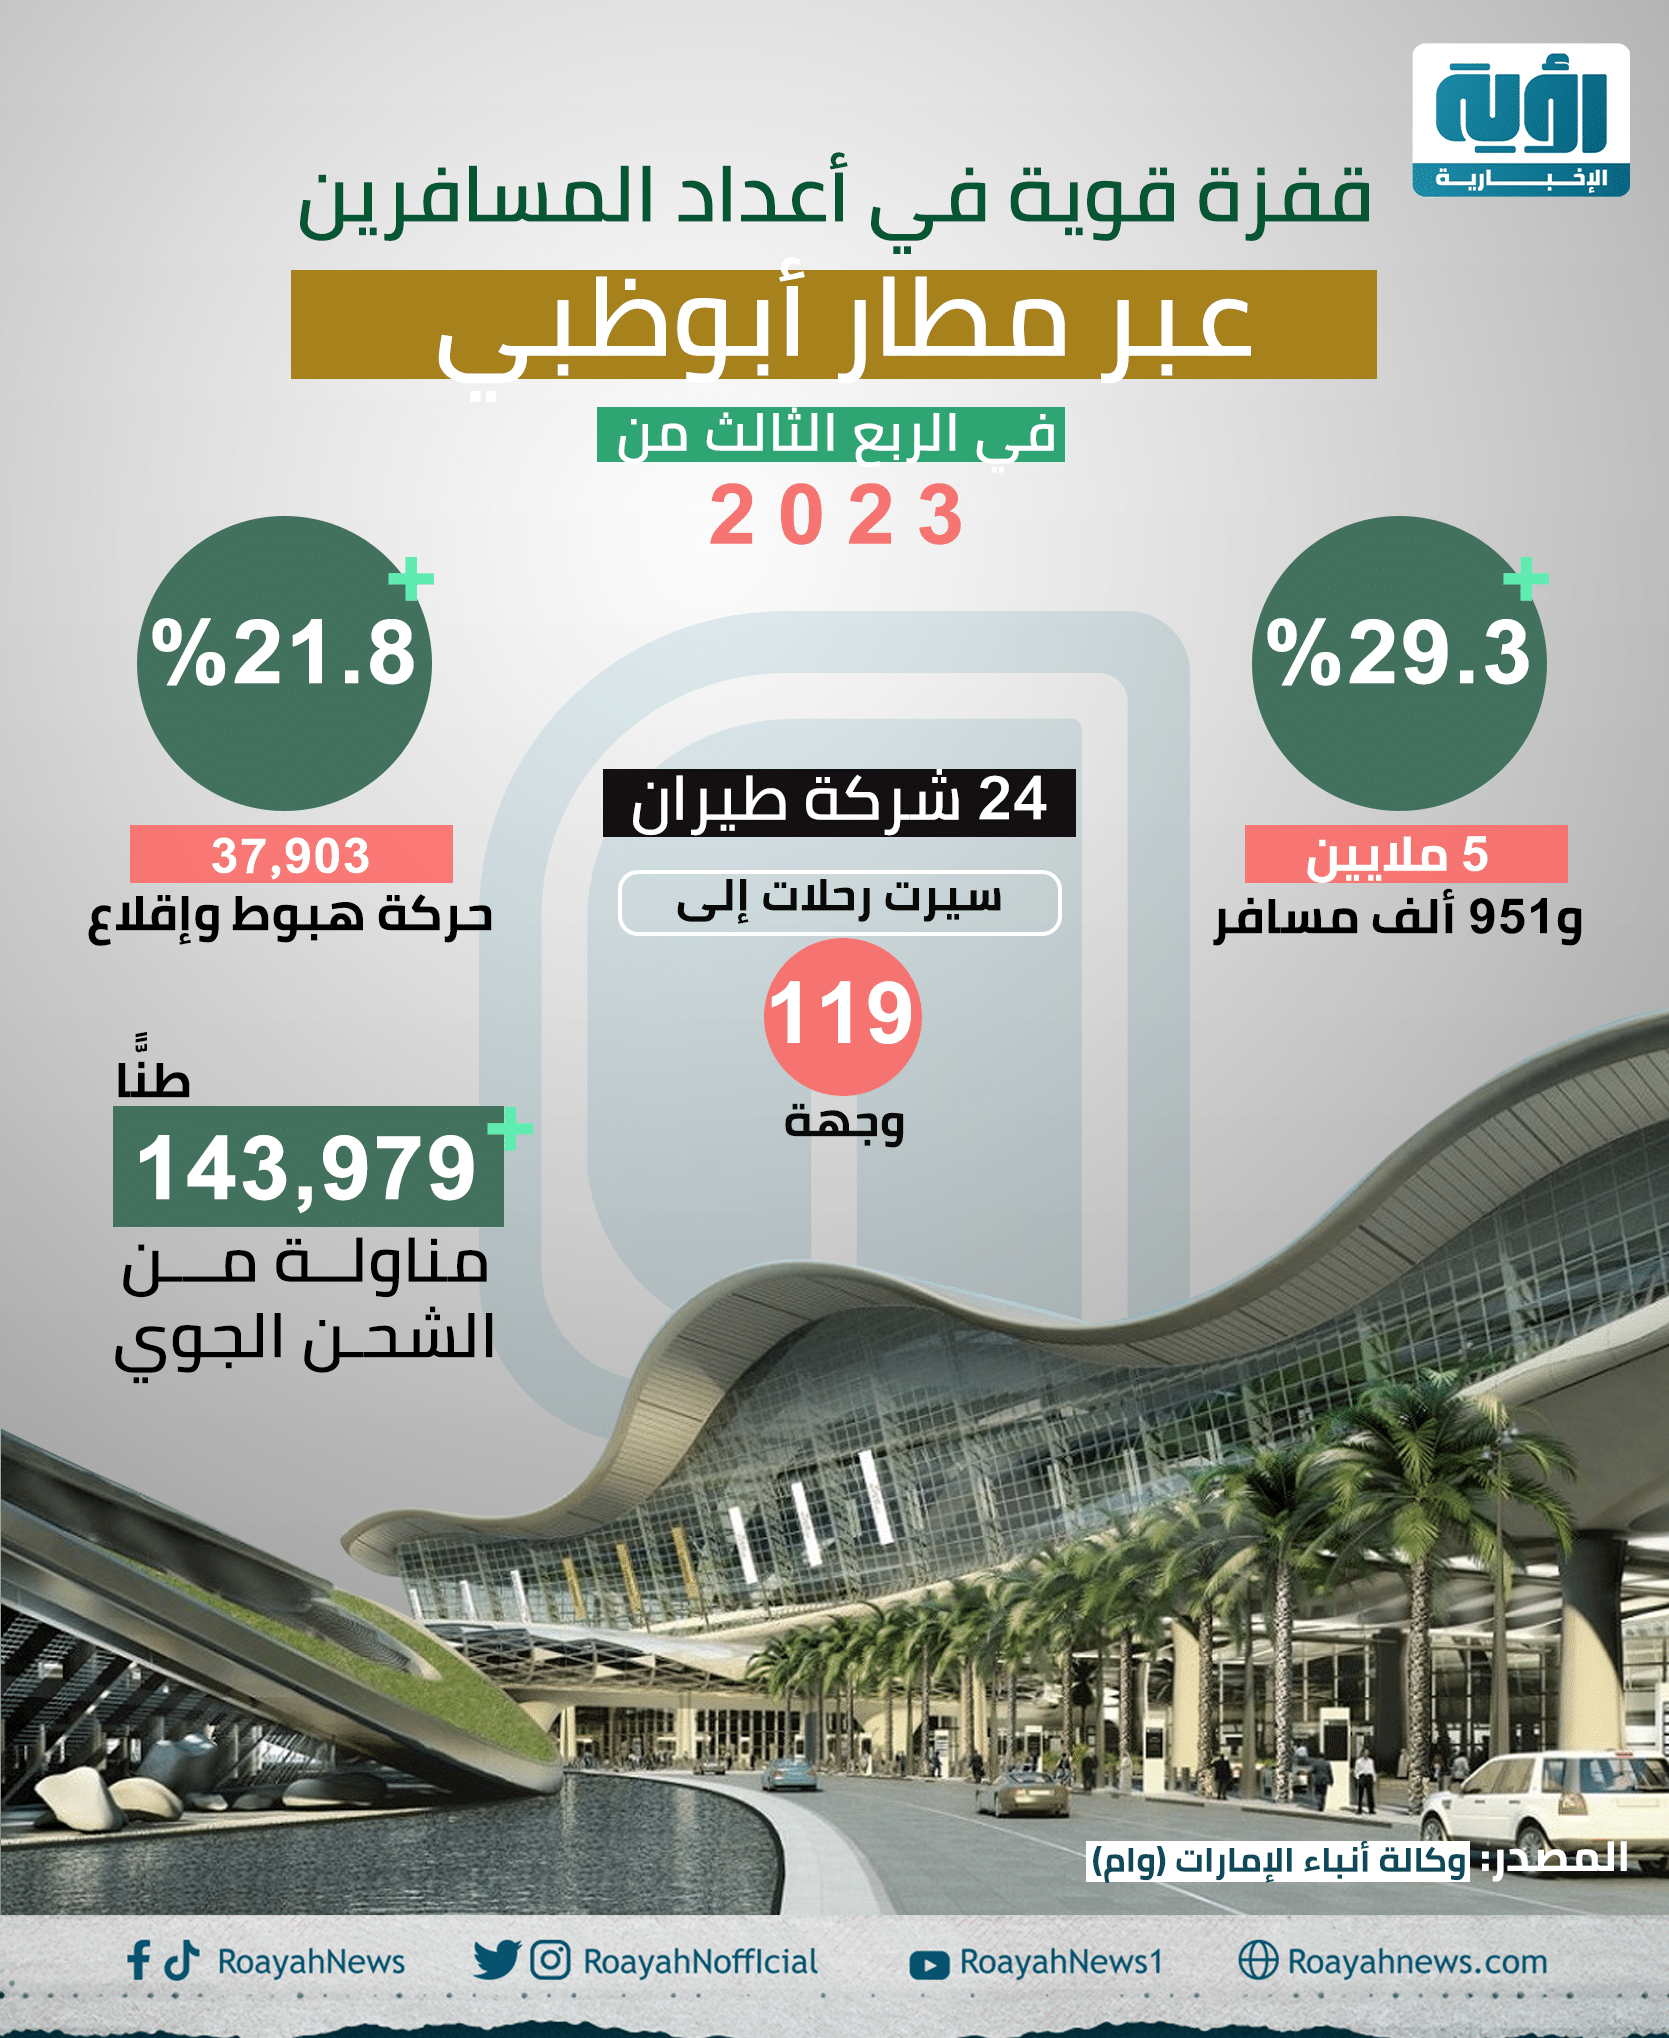 قفزة قوية في أعداد المسافرين عبر مطار أبوظبي في الربع الثالث من 2023 